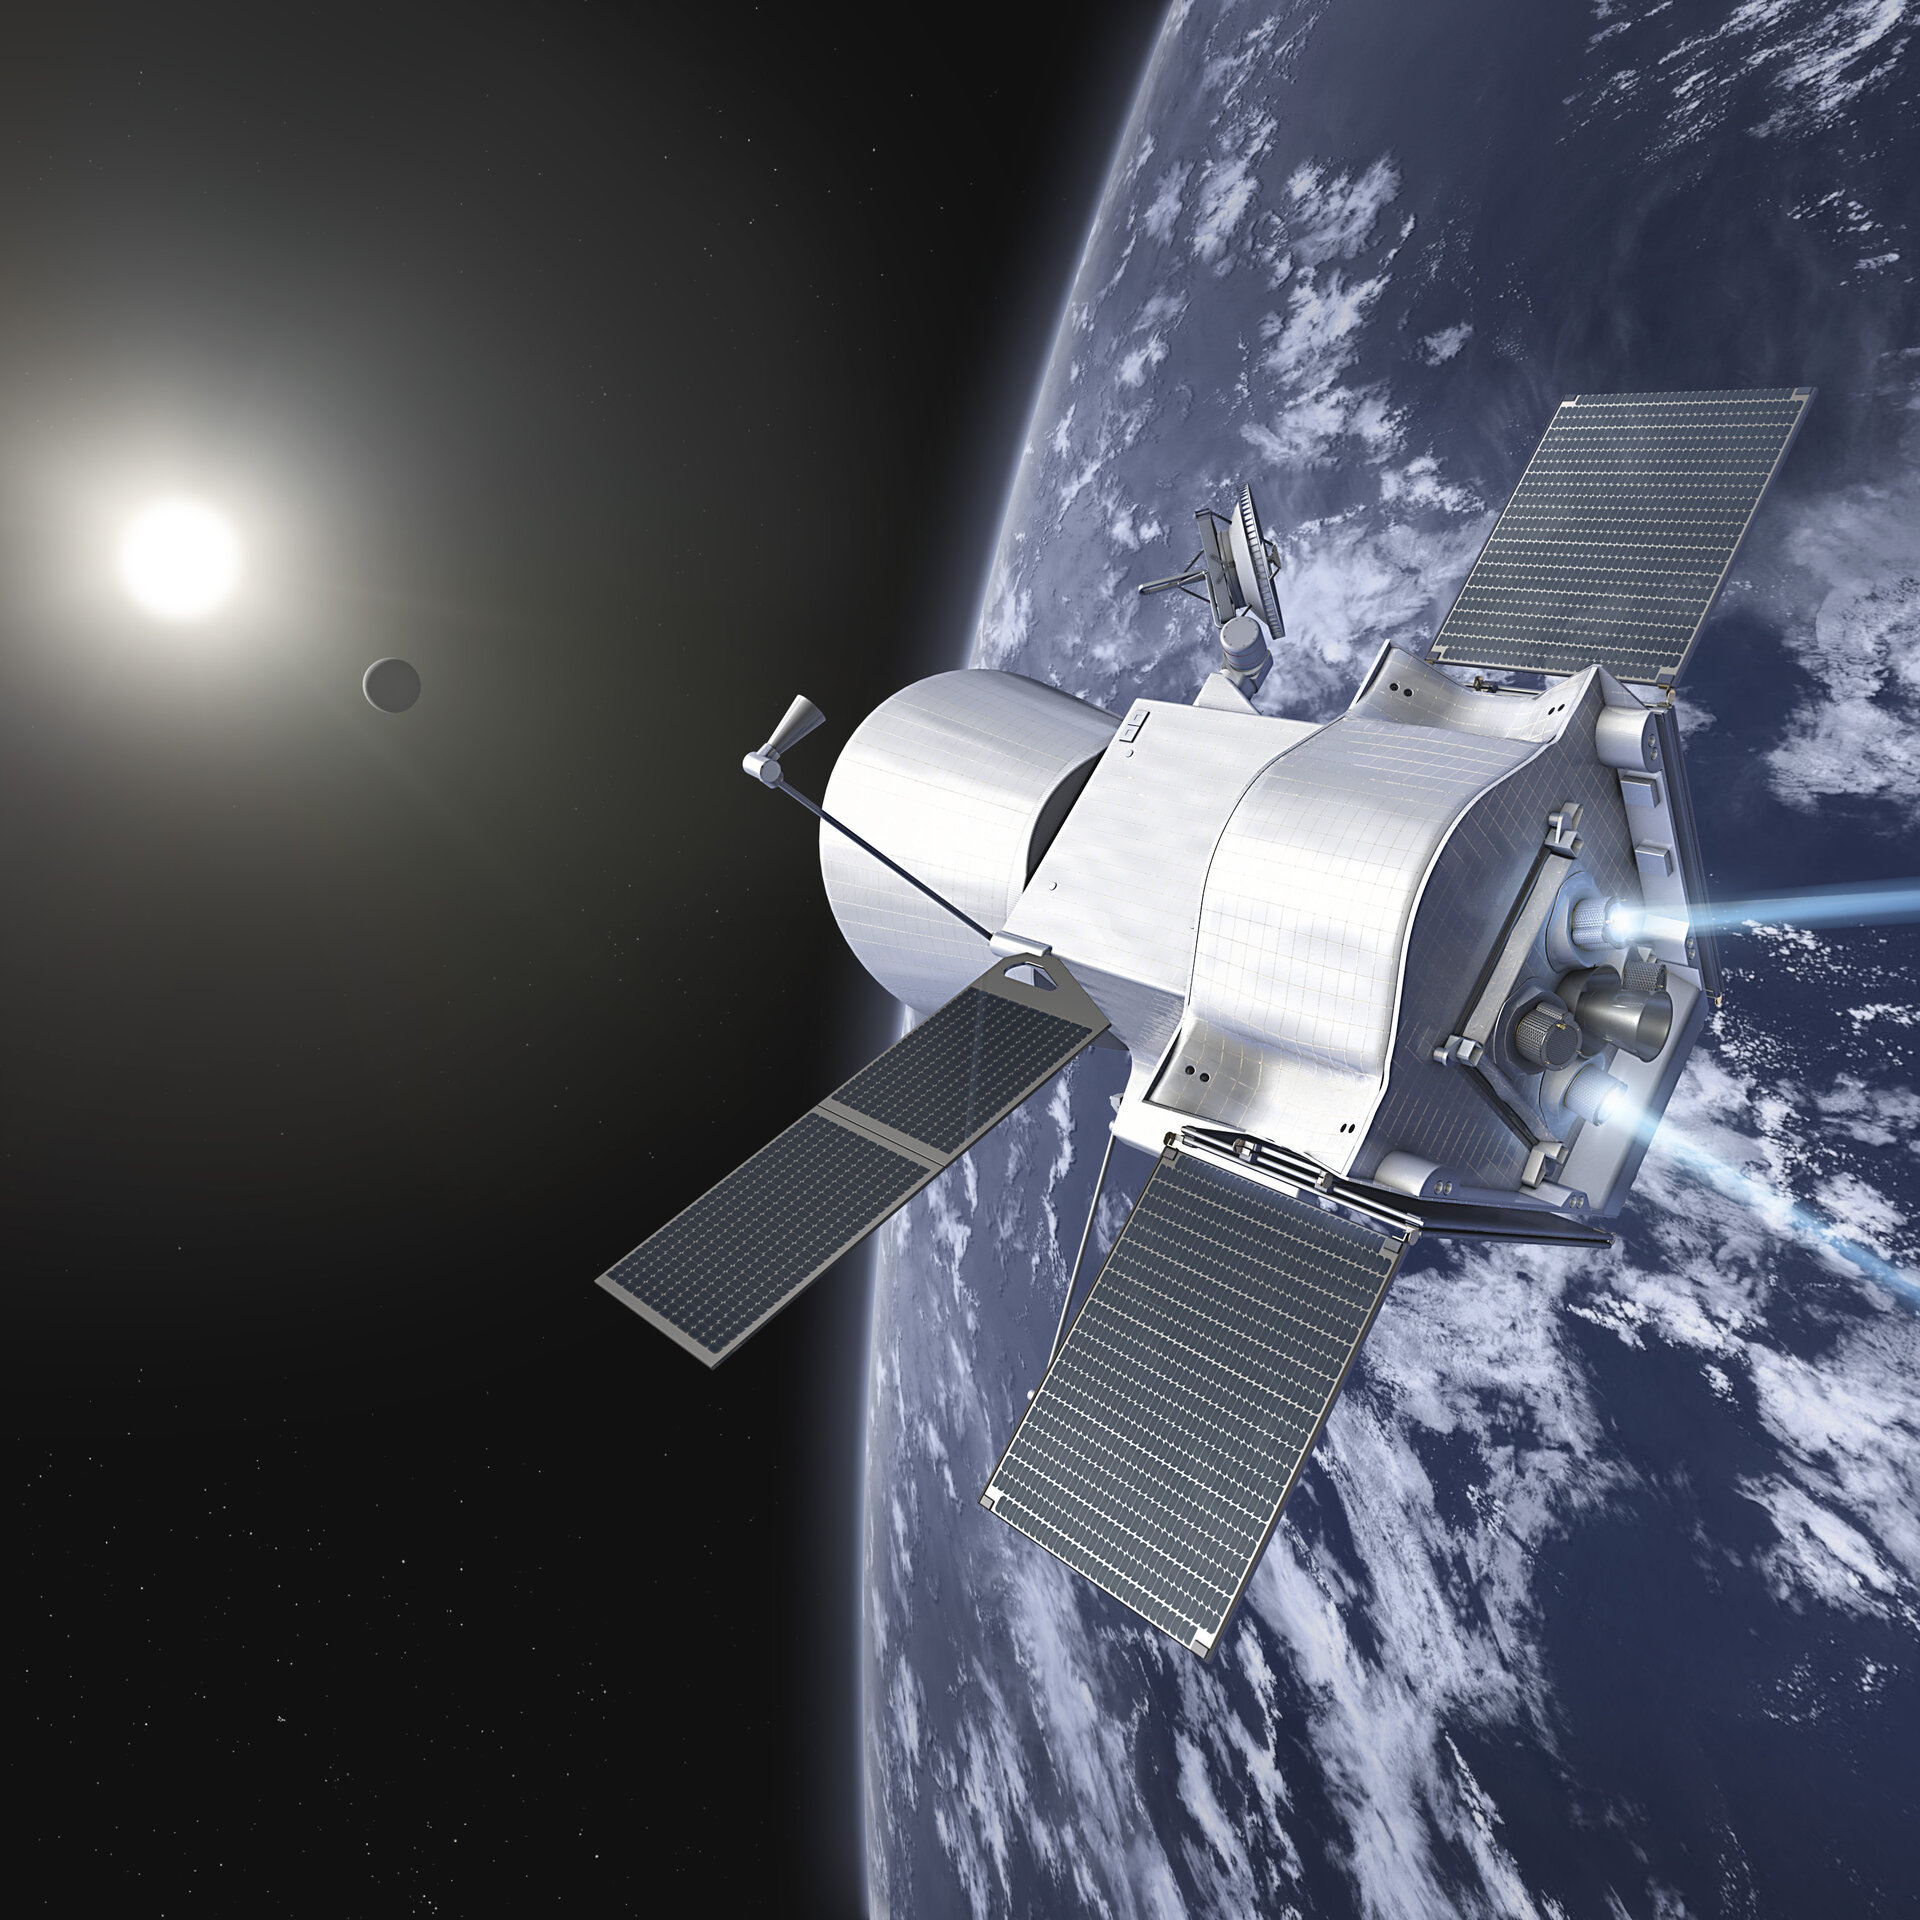 Bepi-Colombo, la prima missione europea per lo studio di Mercurio